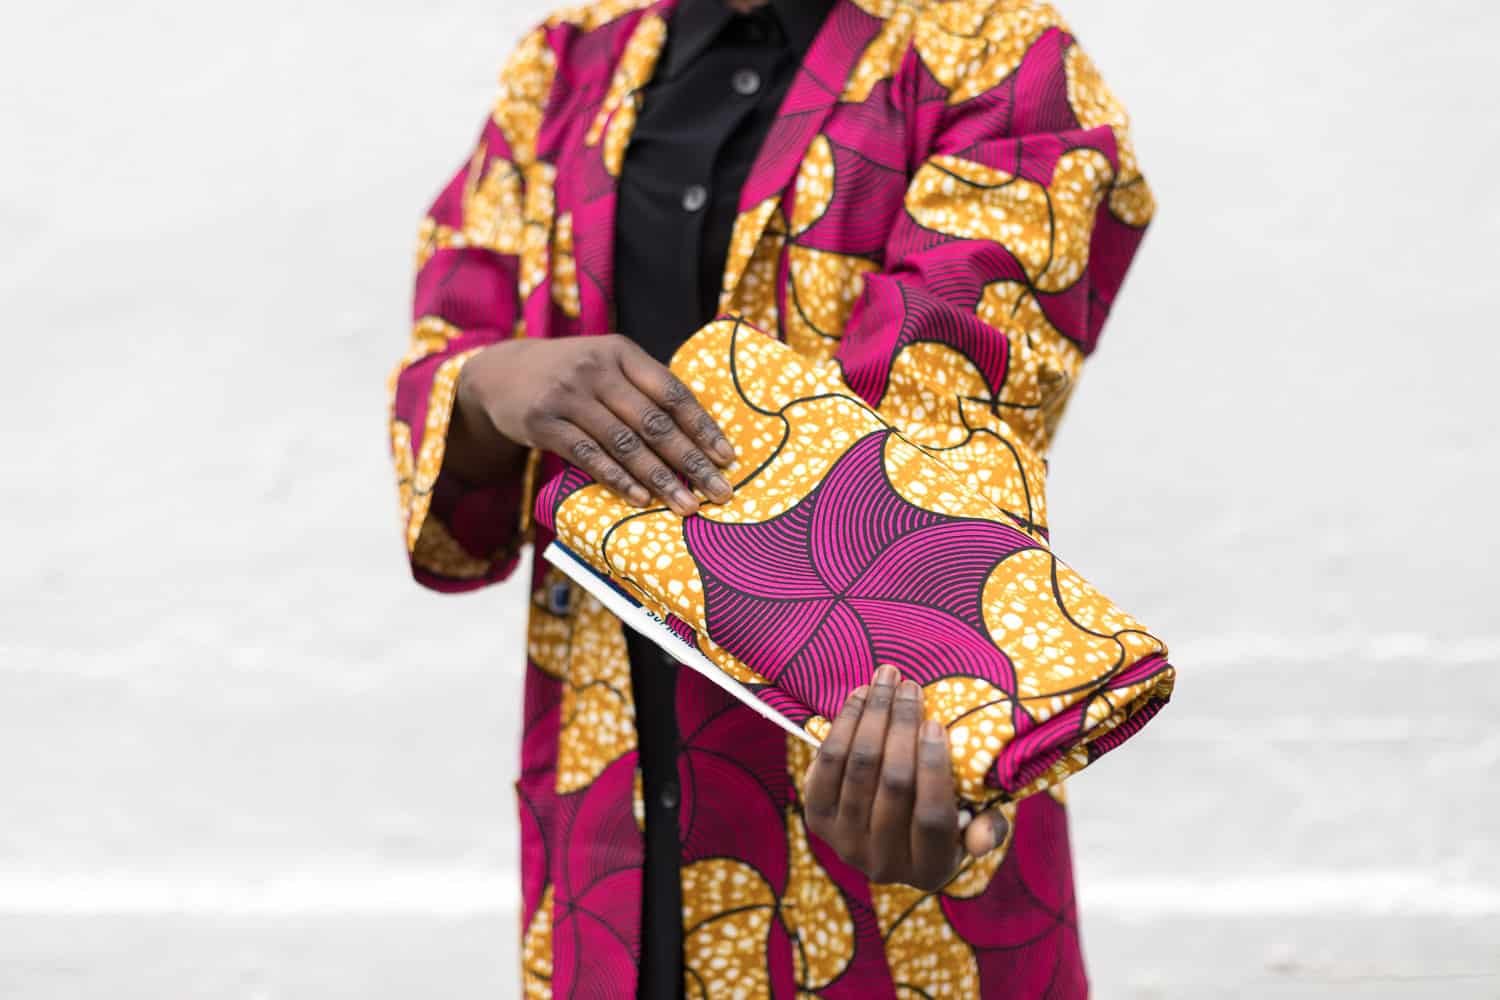 Retrato profesional de una modelo mostrando una tela africana rosa y amarilla